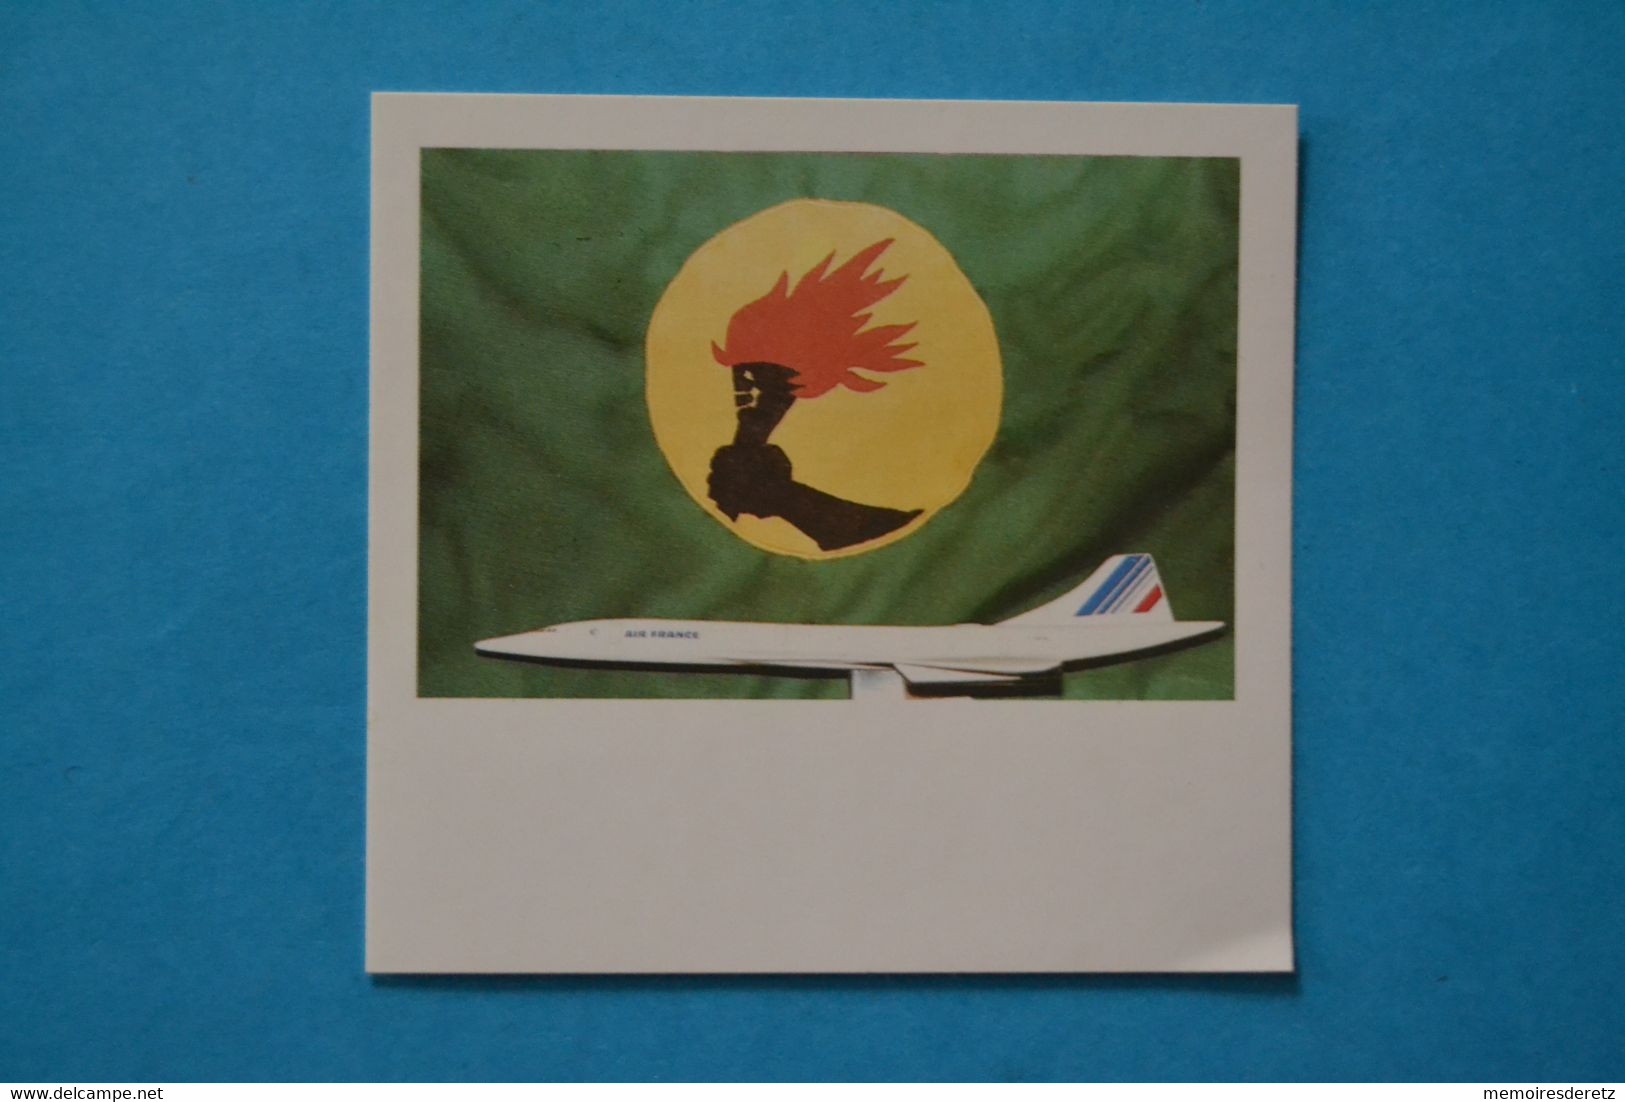 Avion CONCORDE - Autocollant Sticker - AIR FRANCE Zaïre Congo - Stickers